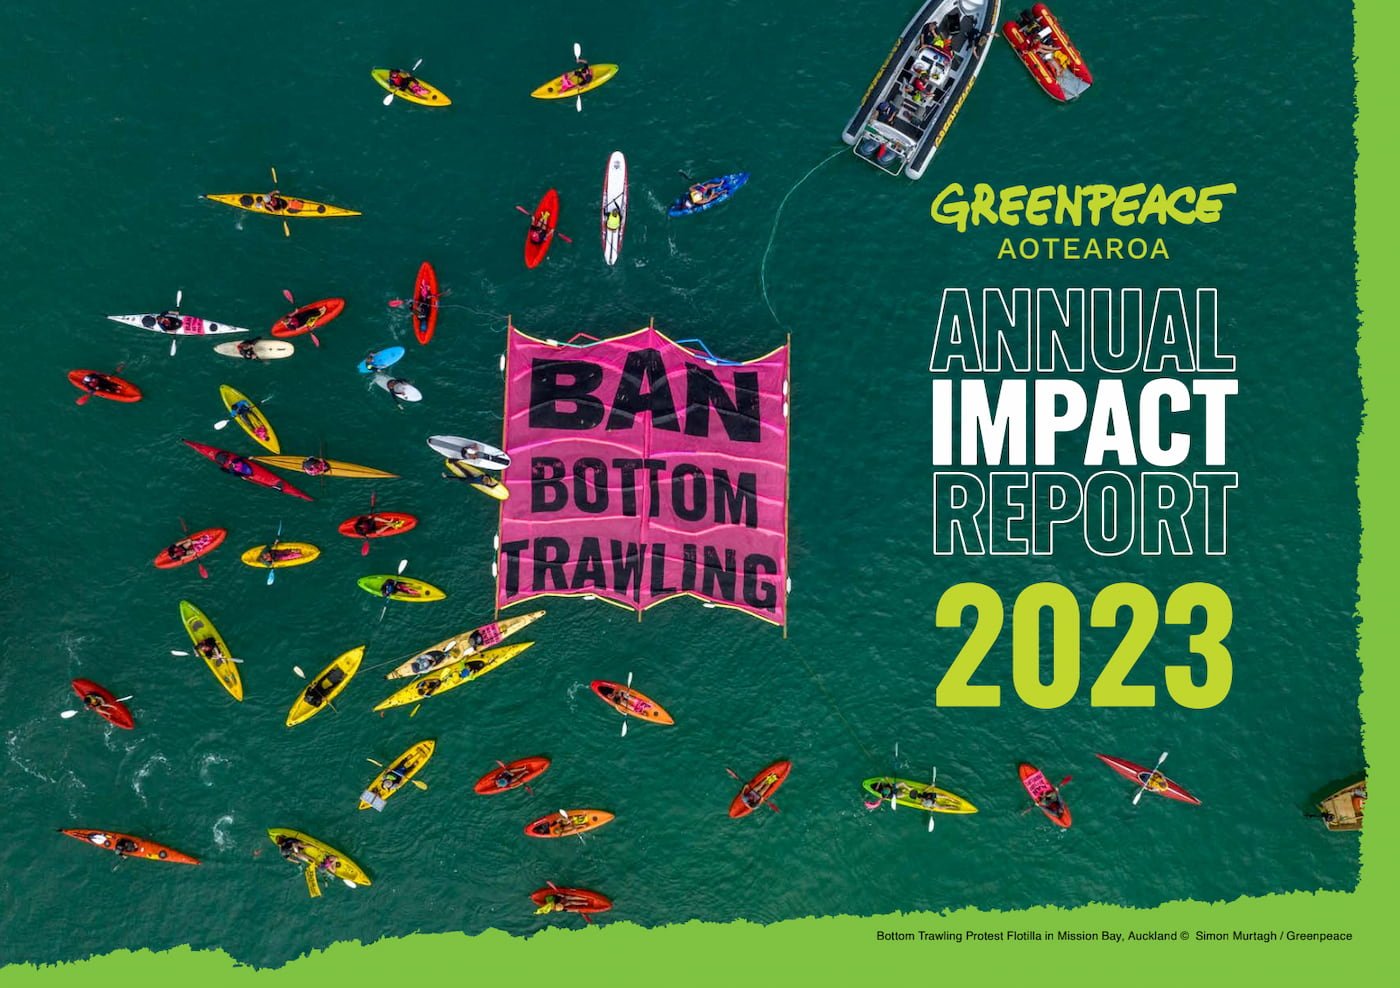 2023 Greenpeace Aotearoa Annual Impact Report